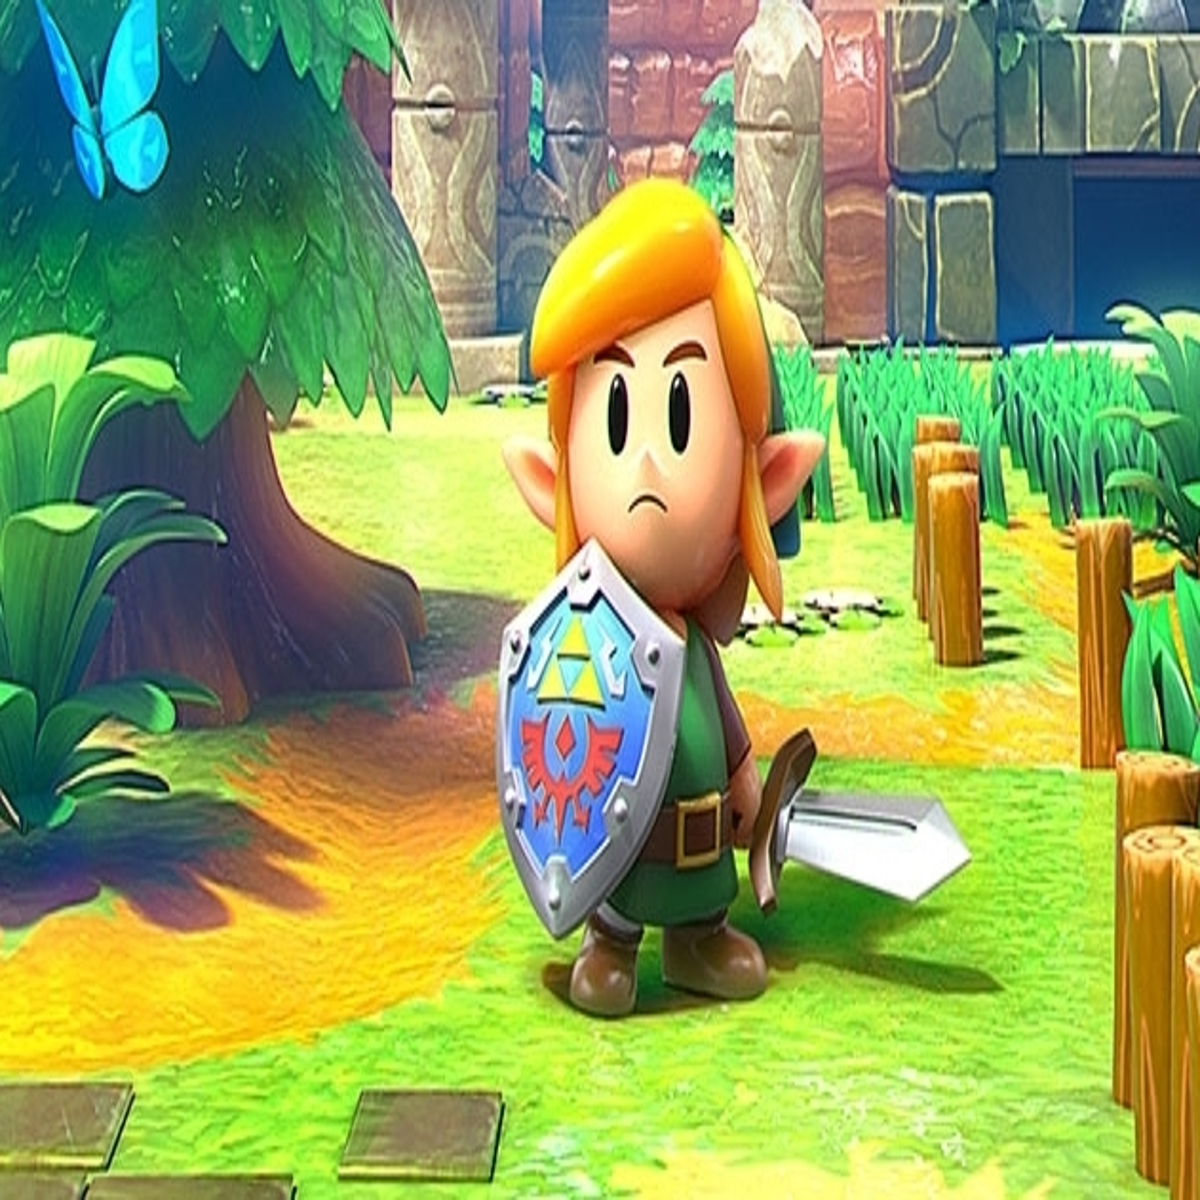 The Legend of Zelda: Link's Awakening (2019) [Switch] - The Pixels